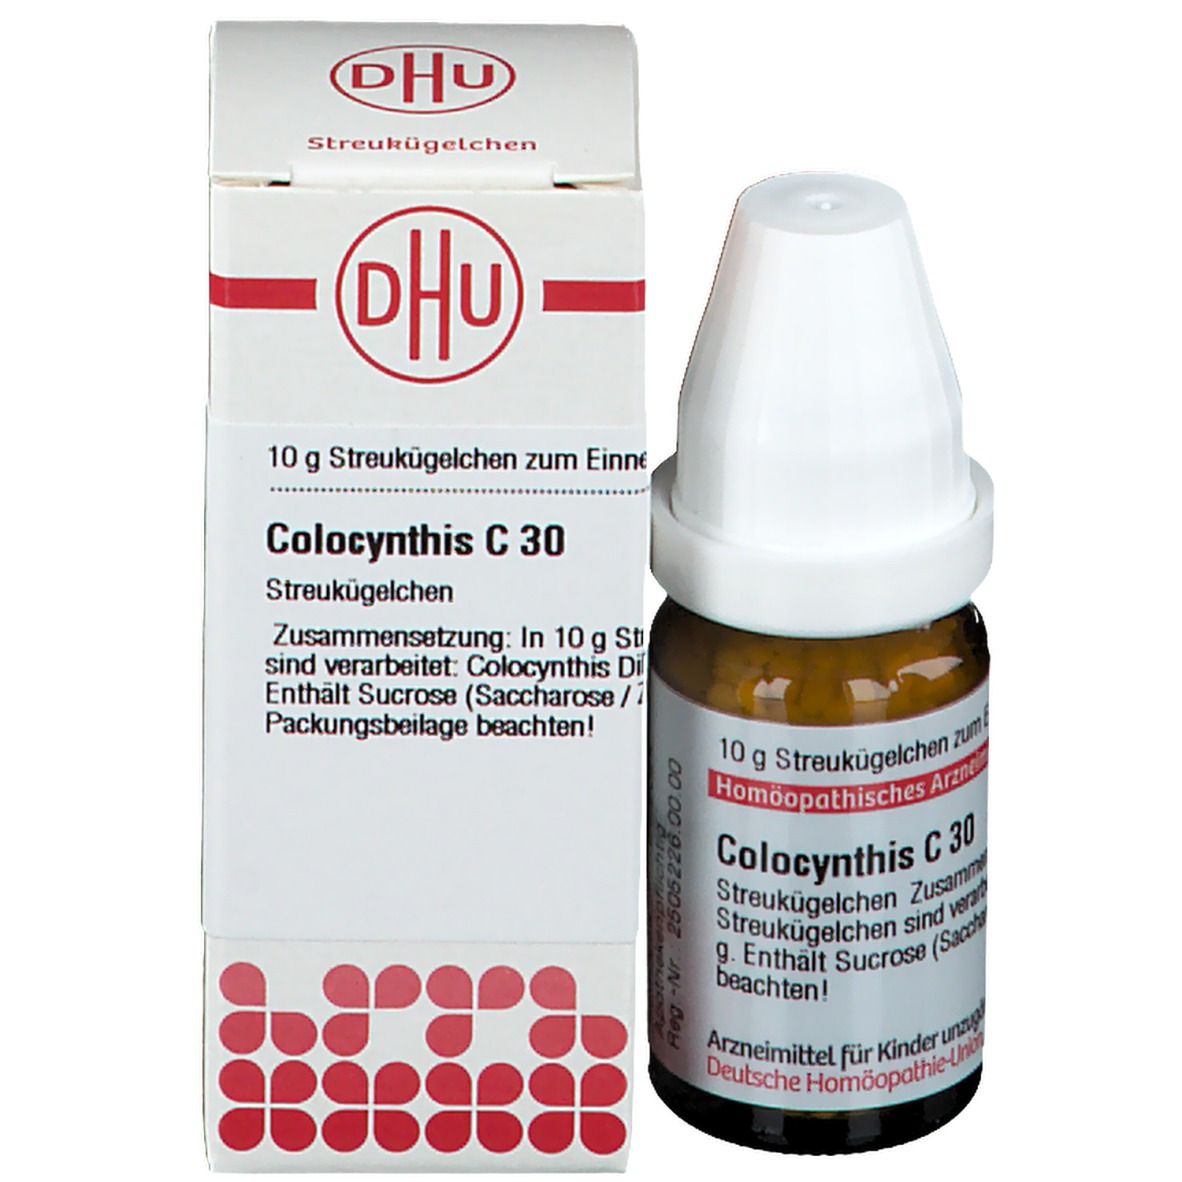 DHU Colocynthis C30